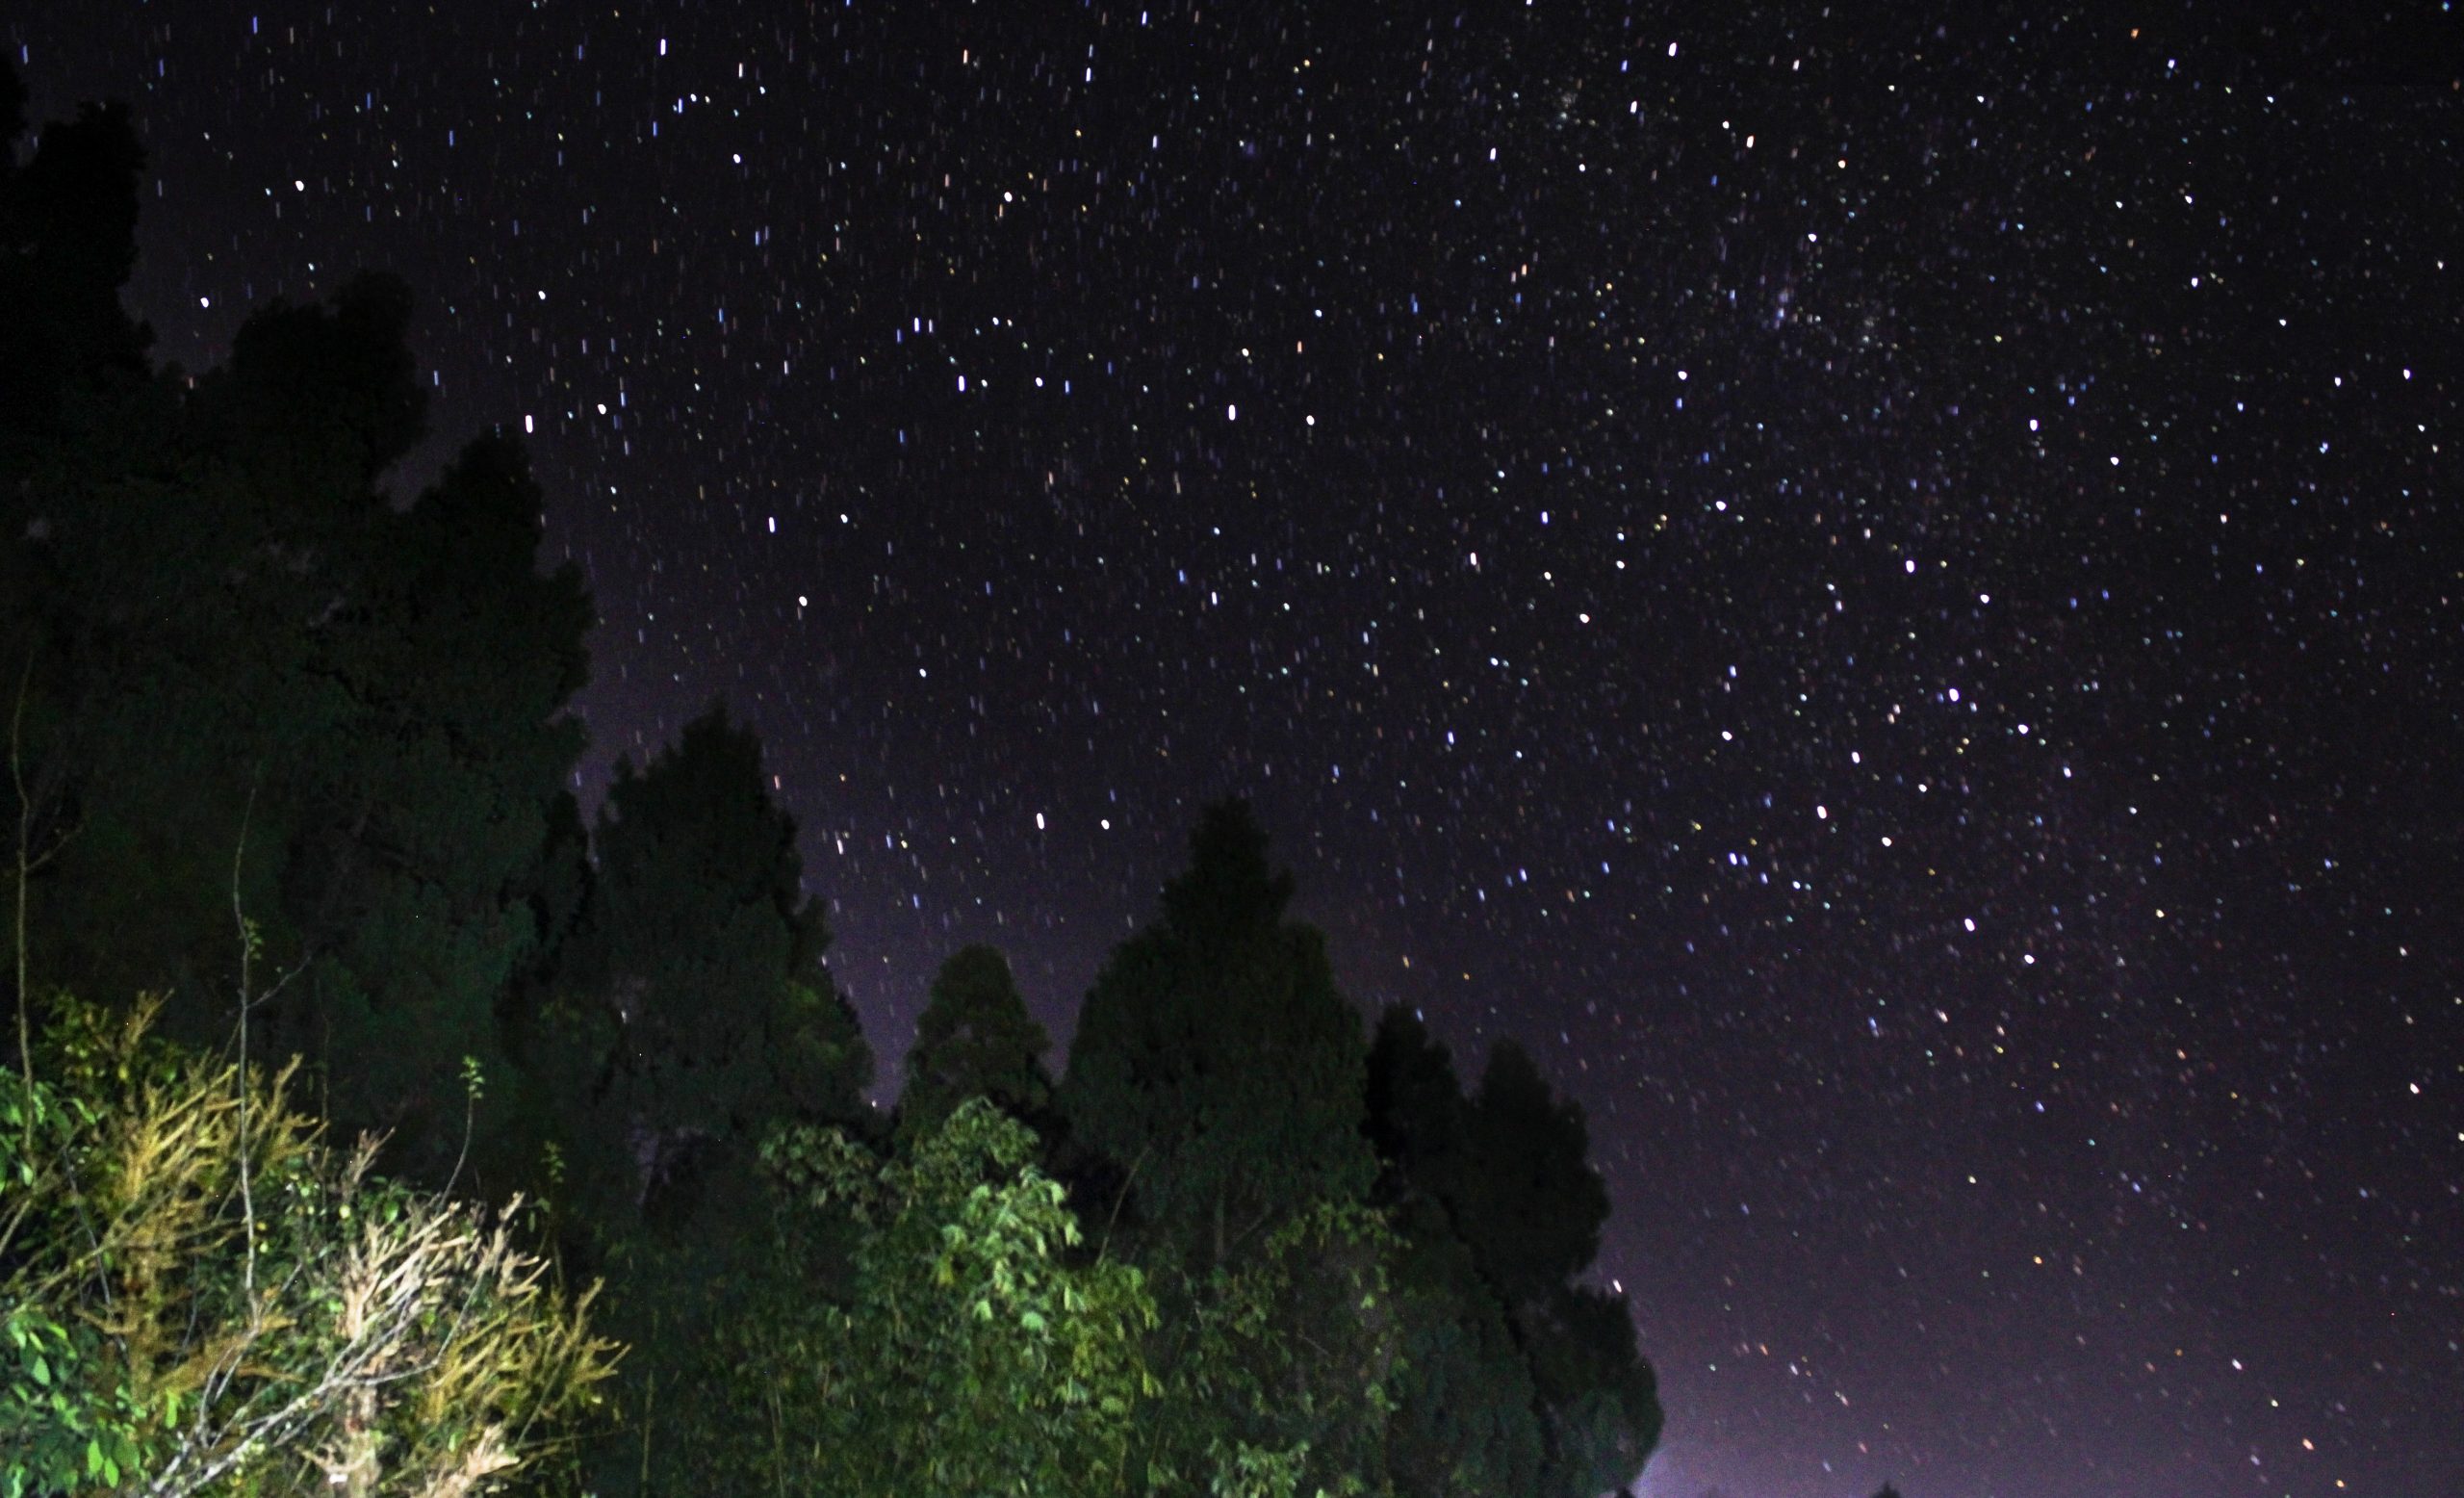 An amazing starry night in Kaffir Khasmahal